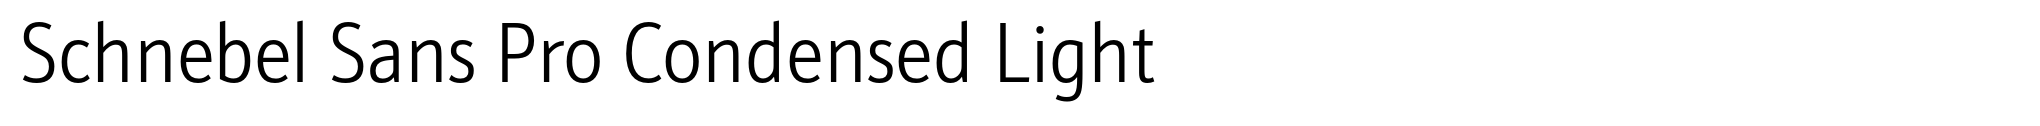 Schnebel Sans Pro Condensed Light image